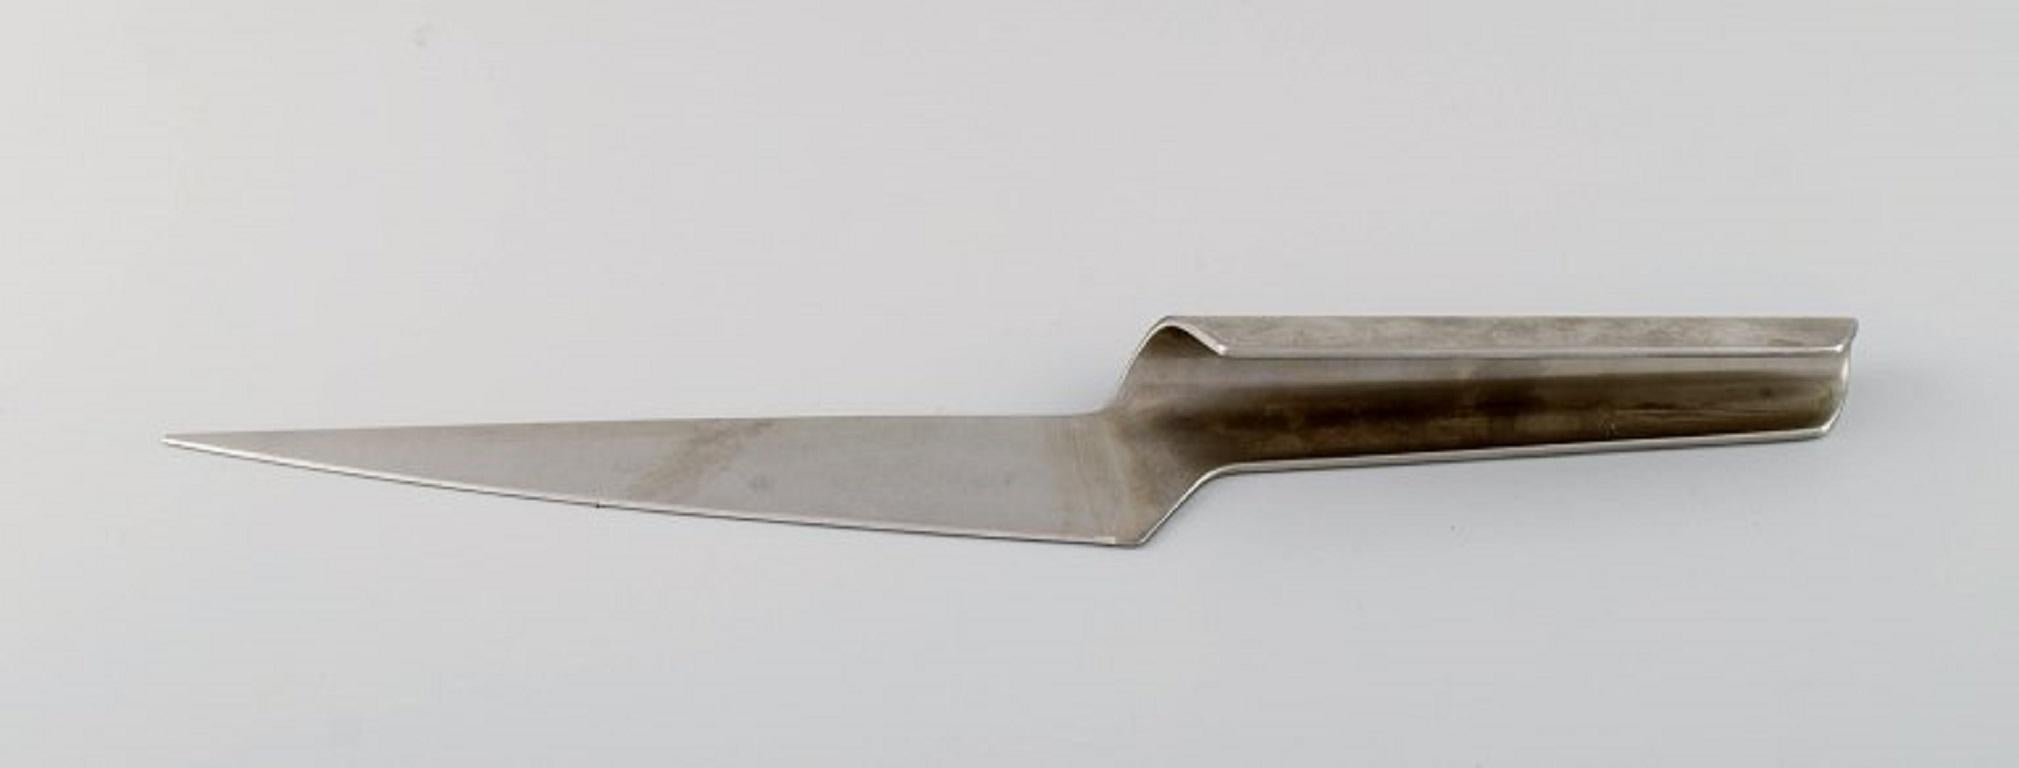 Scandinavian Modern Henning Koppel for Georg Jensen, Rare Blue Shark Carving Set in Stainless Steel